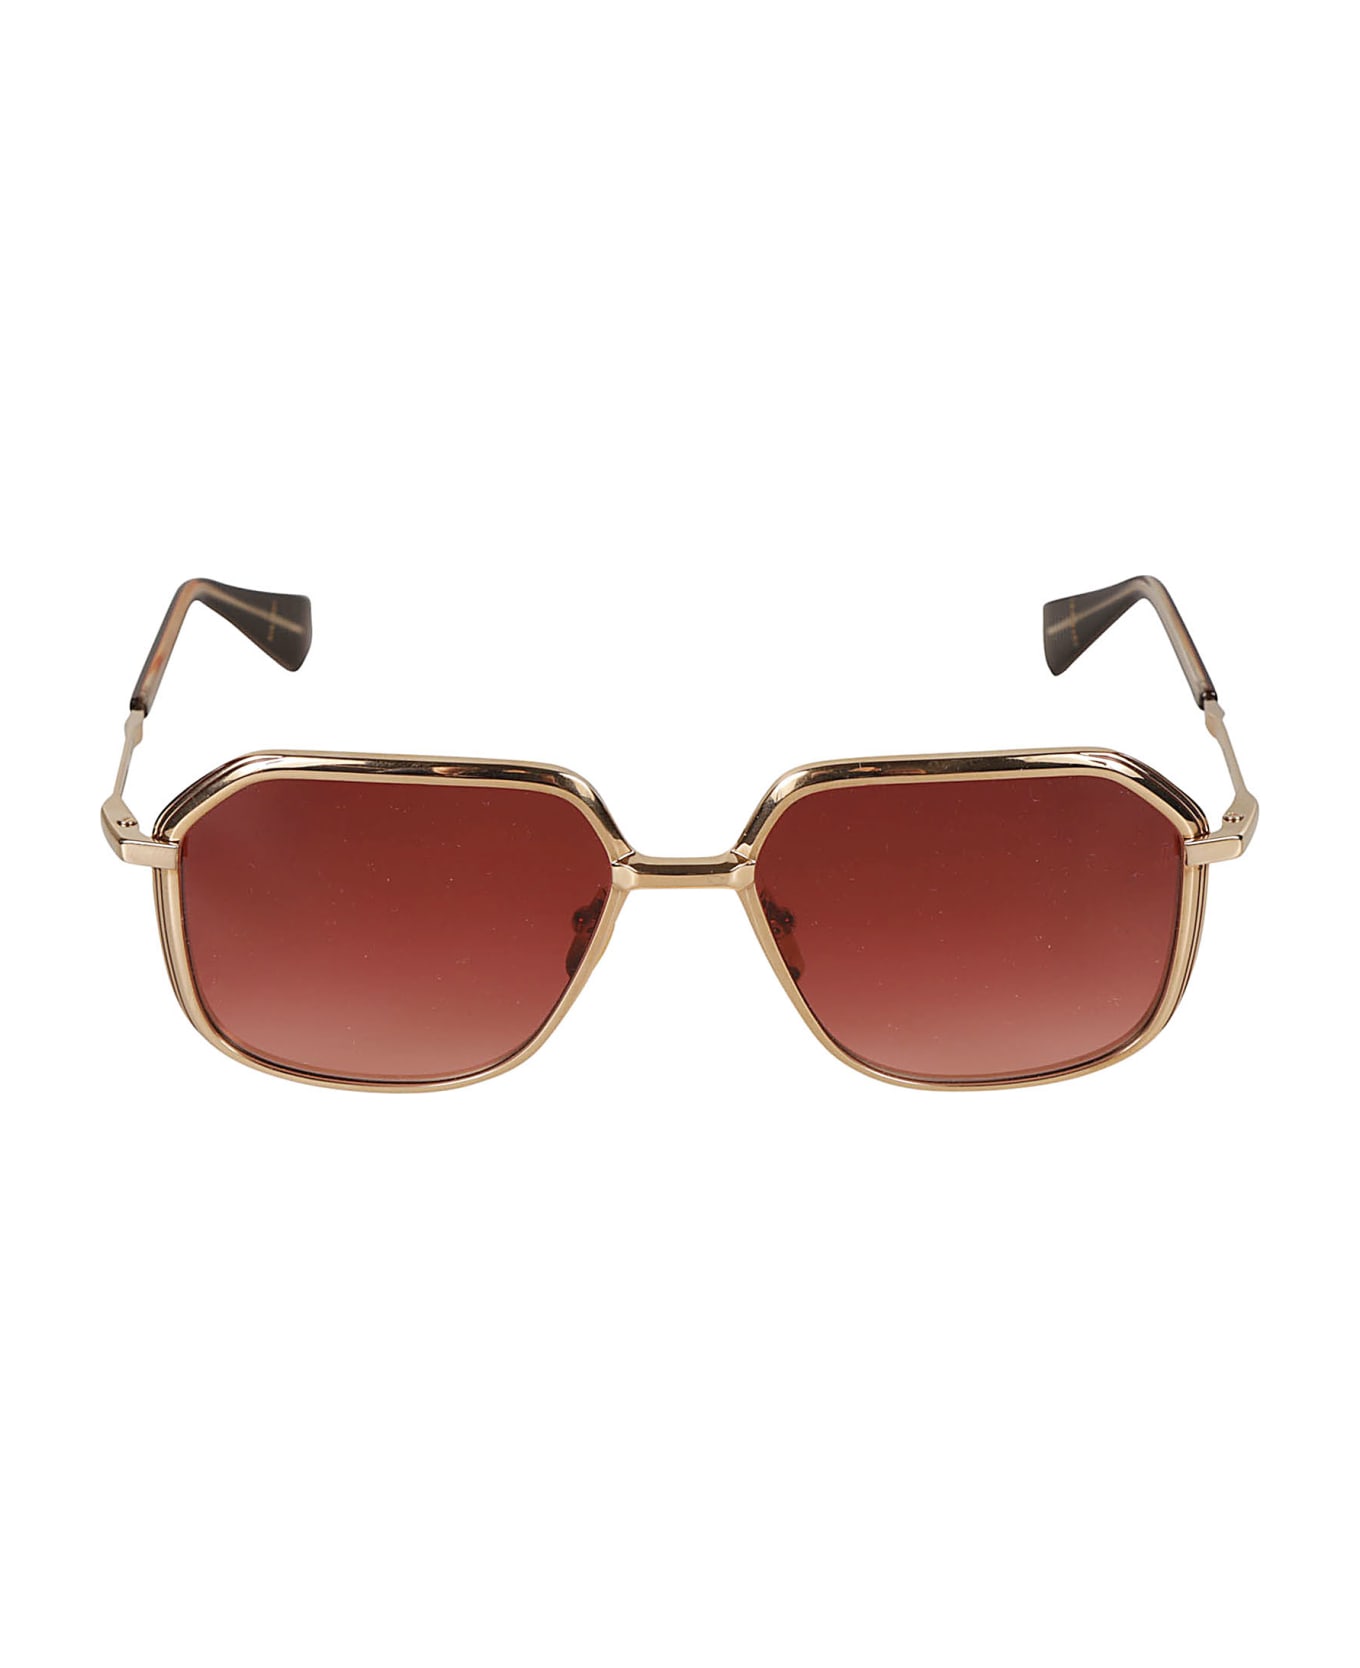 Jacques Marie Mage Aida Sunglasses Sunglasses - gold